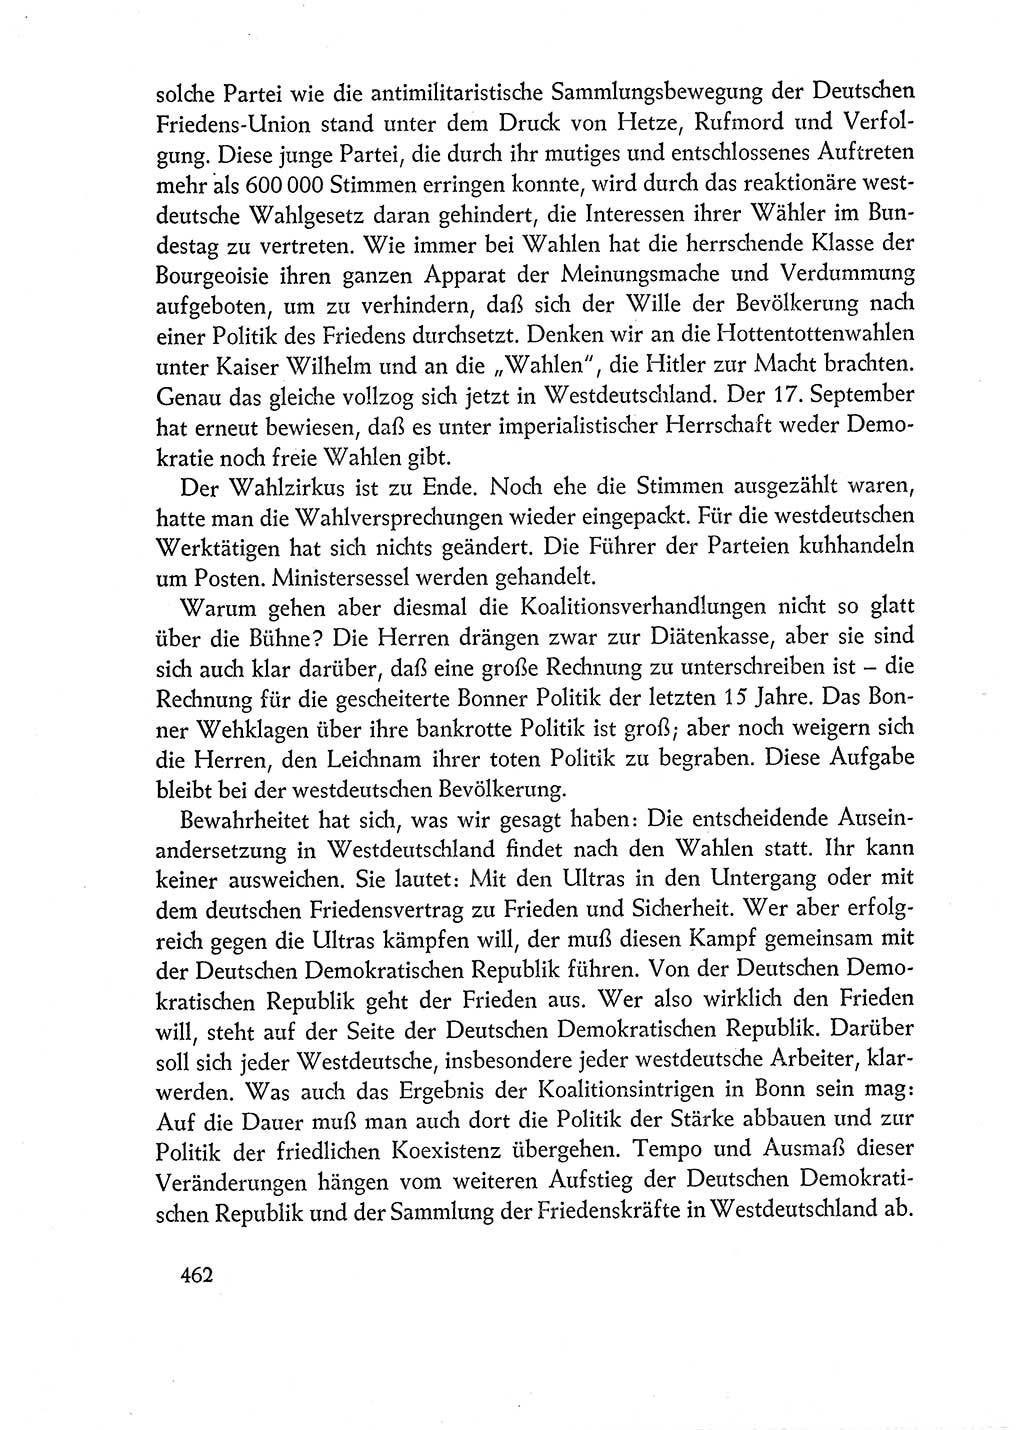 Dokumente der Sozialistischen Einheitspartei Deutschlands (SED) [Deutsche Demokratische Republik (DDR)] 1960-1961, Seite 462 (Dok. SED DDR 1960-1961, S. 462)